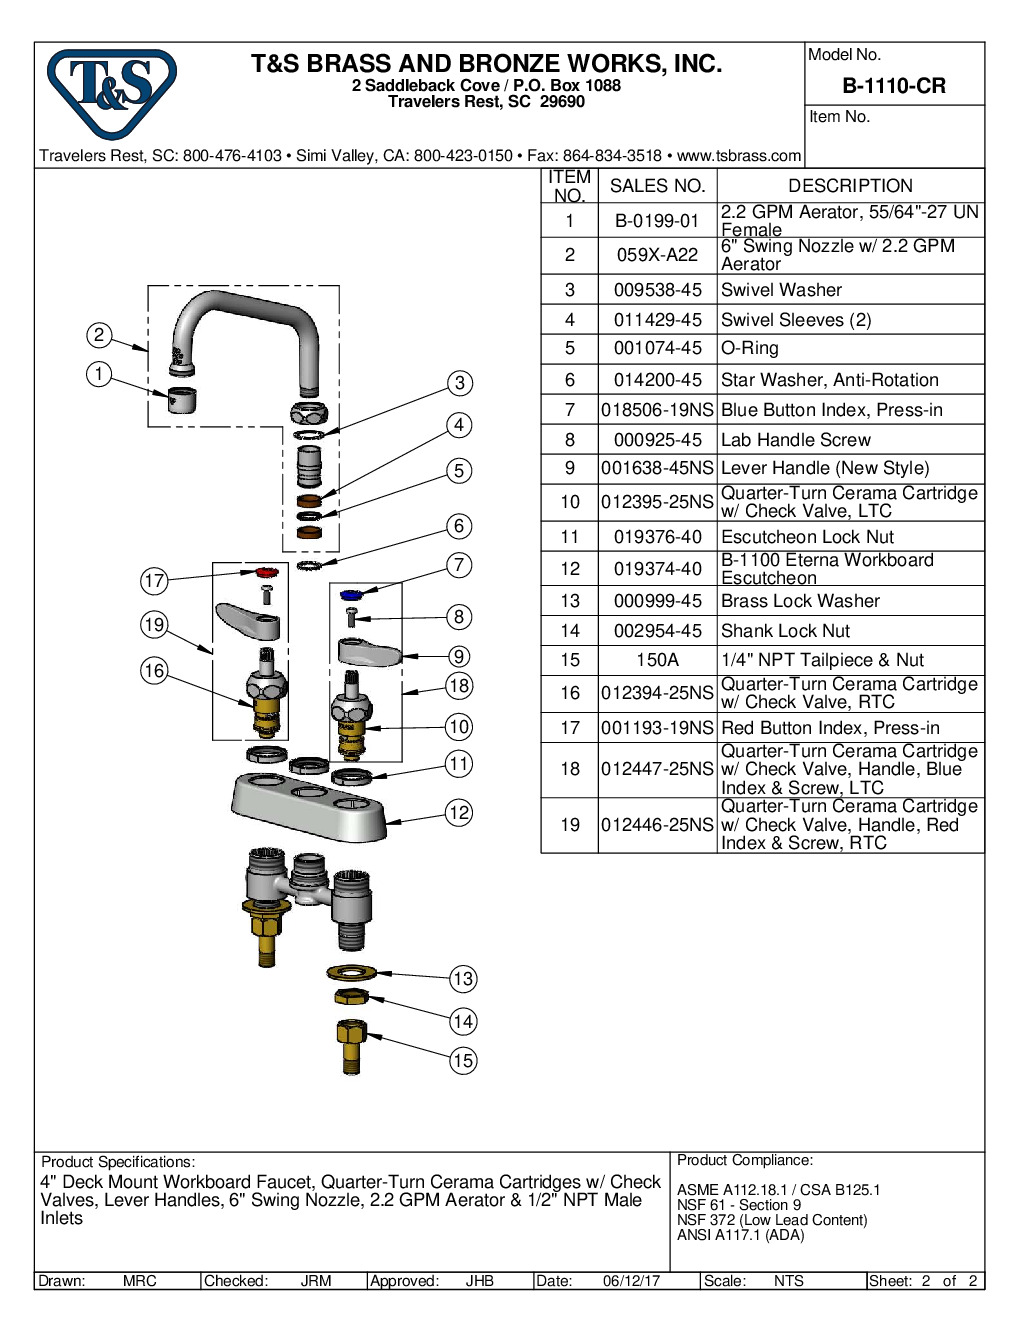 T&S Brass B-1110-CR Deck Mount Faucet